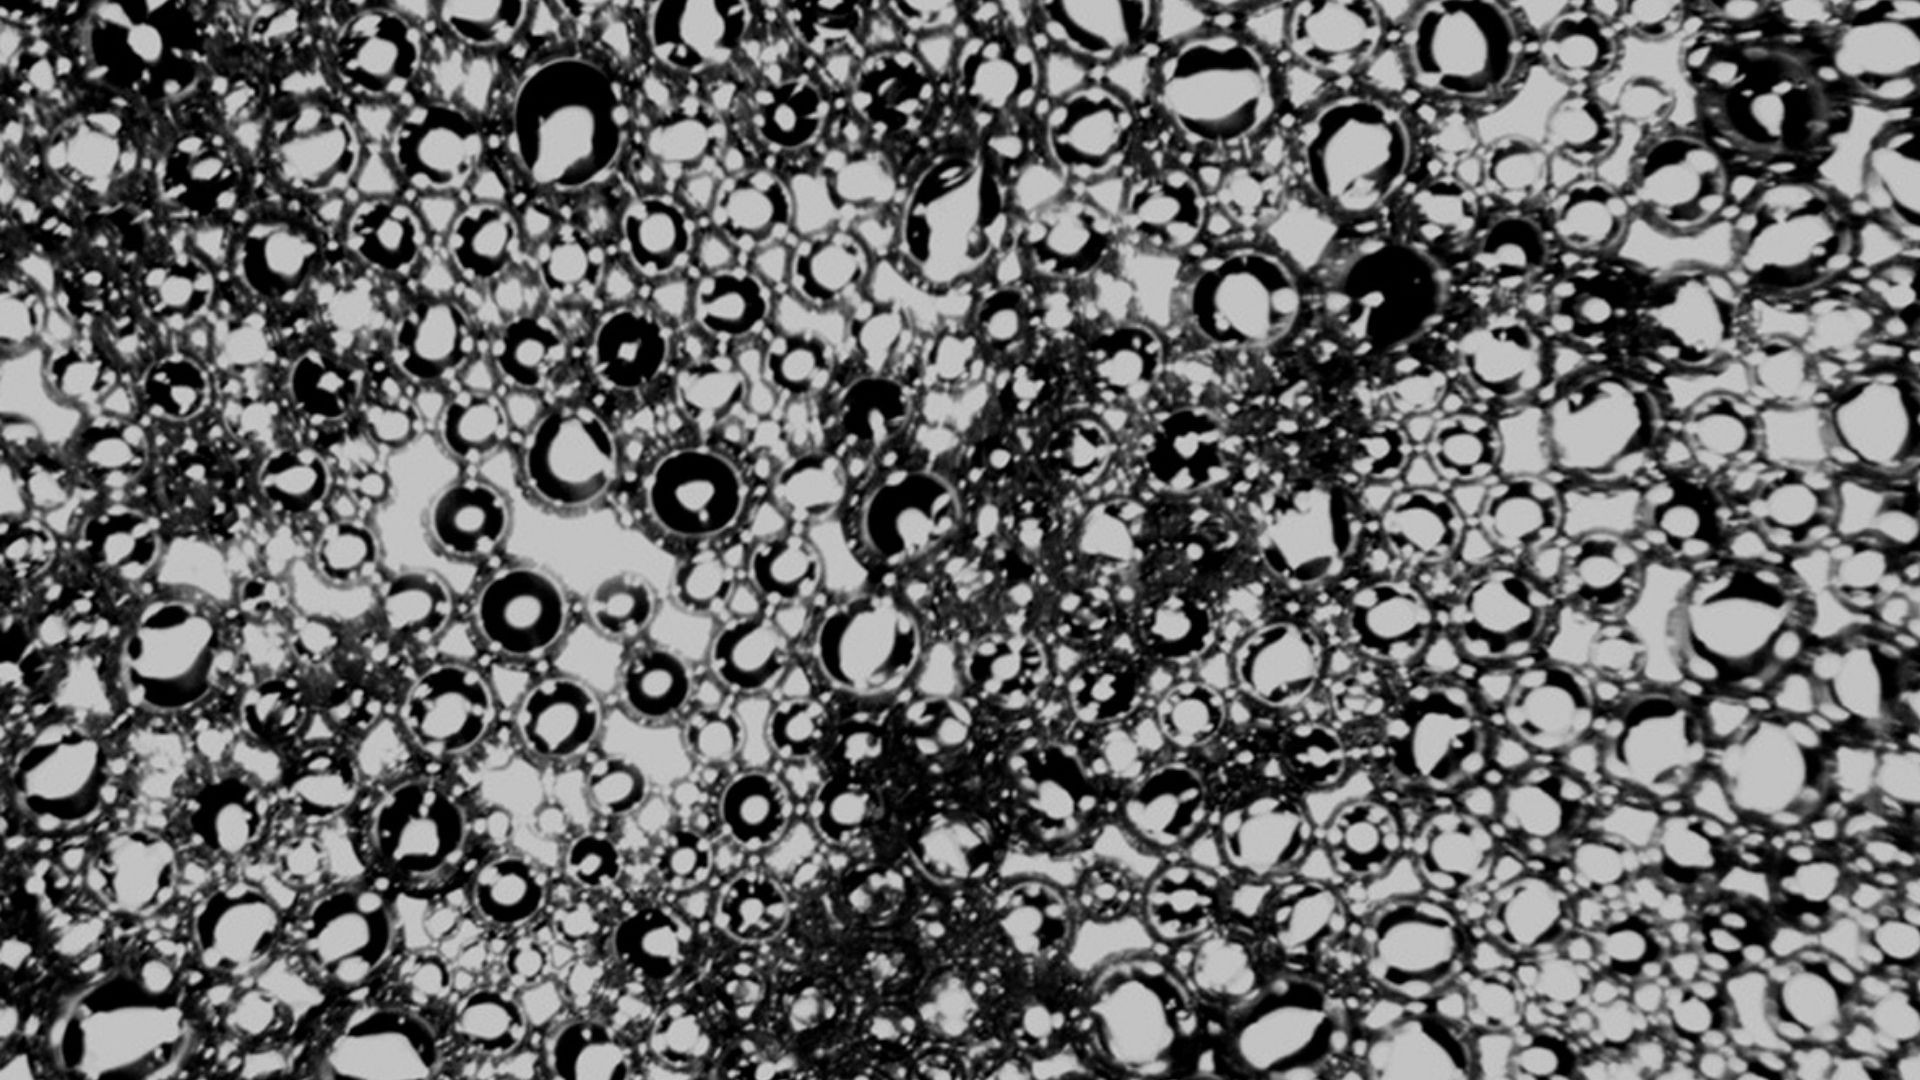 تصویر میکروسکوپی از نانوحباب ها پس از فراصوت با استفاده از اختراع UCF